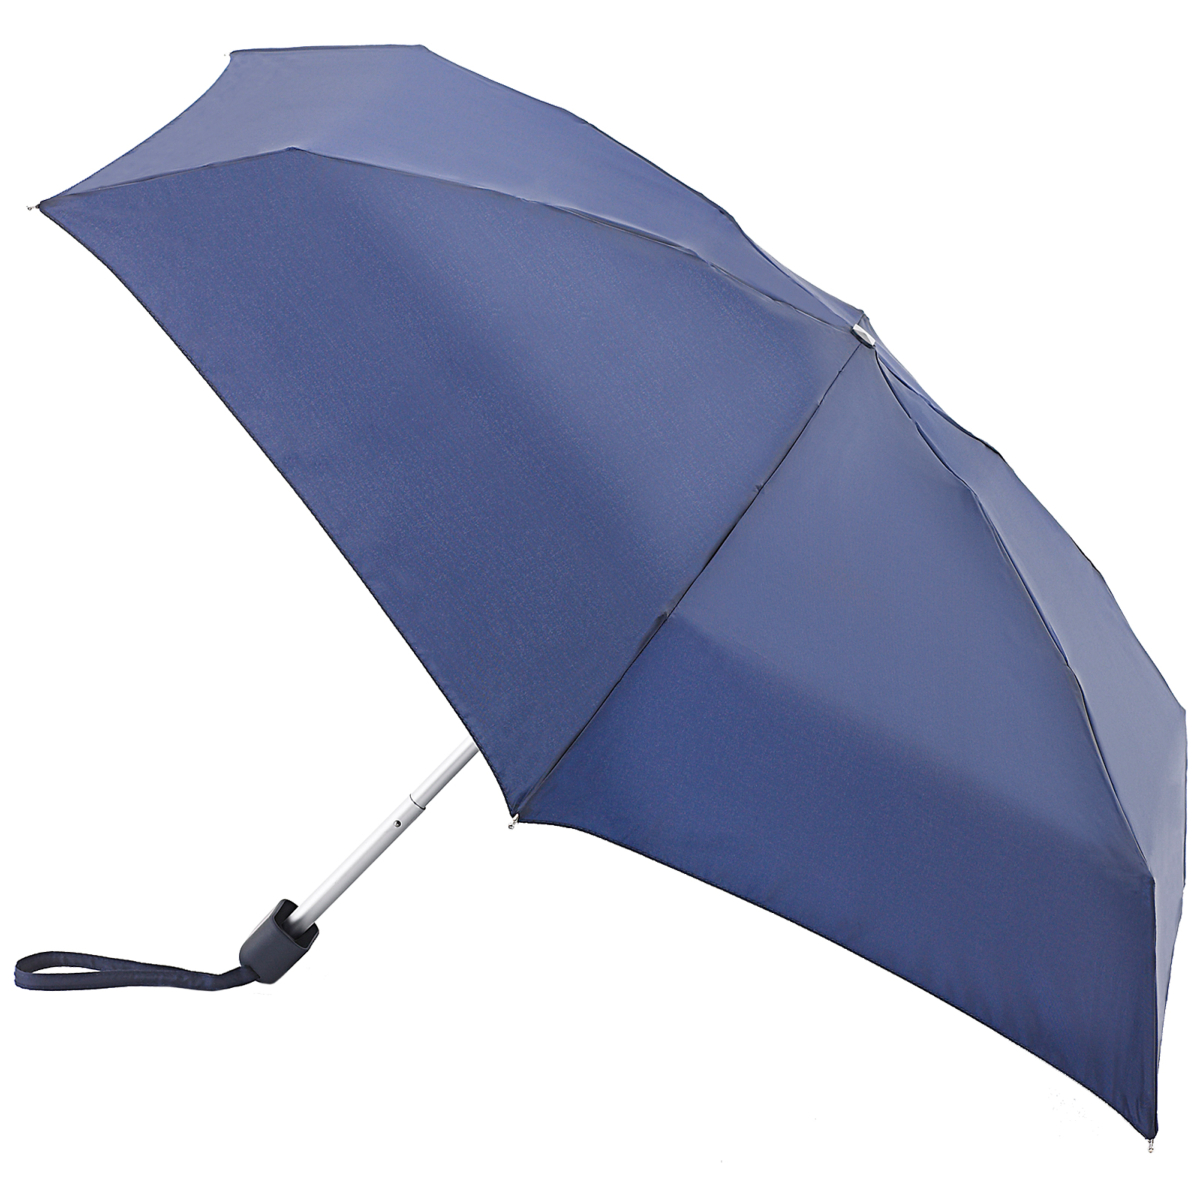 Fulton Tiny Folding Umbrella - Navy